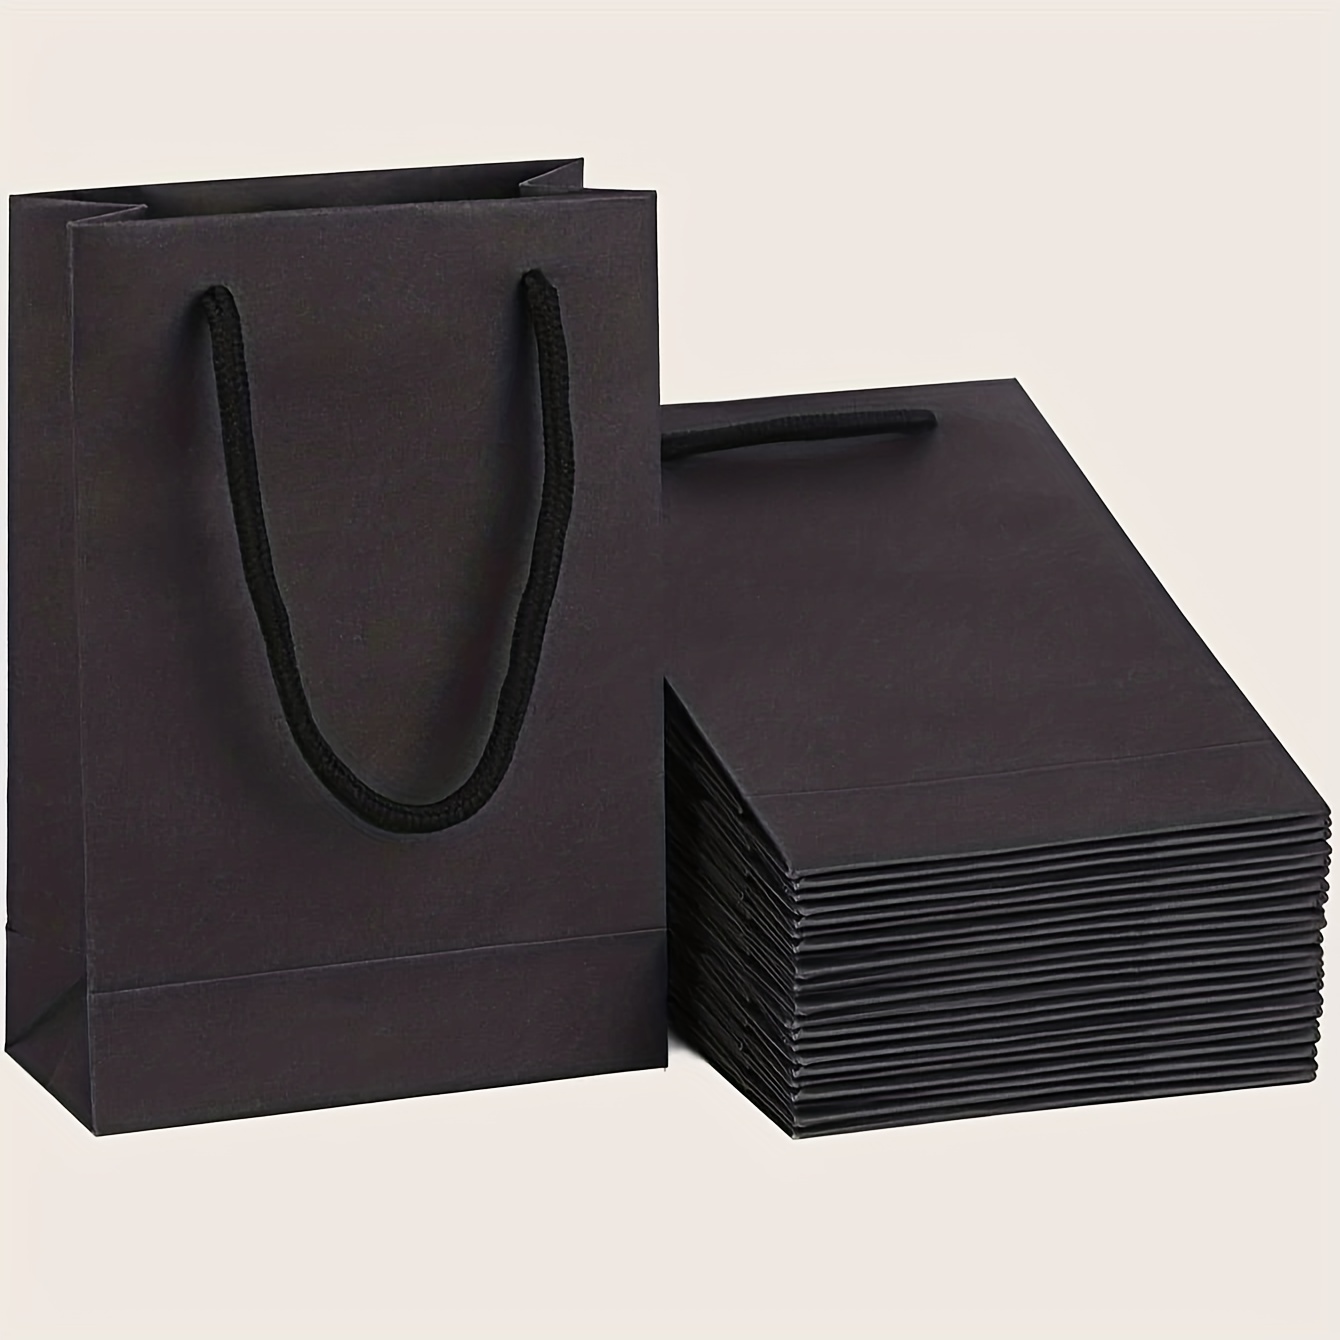 Bolsas de regalo de papel impresas baratas: la solución de embalaje única